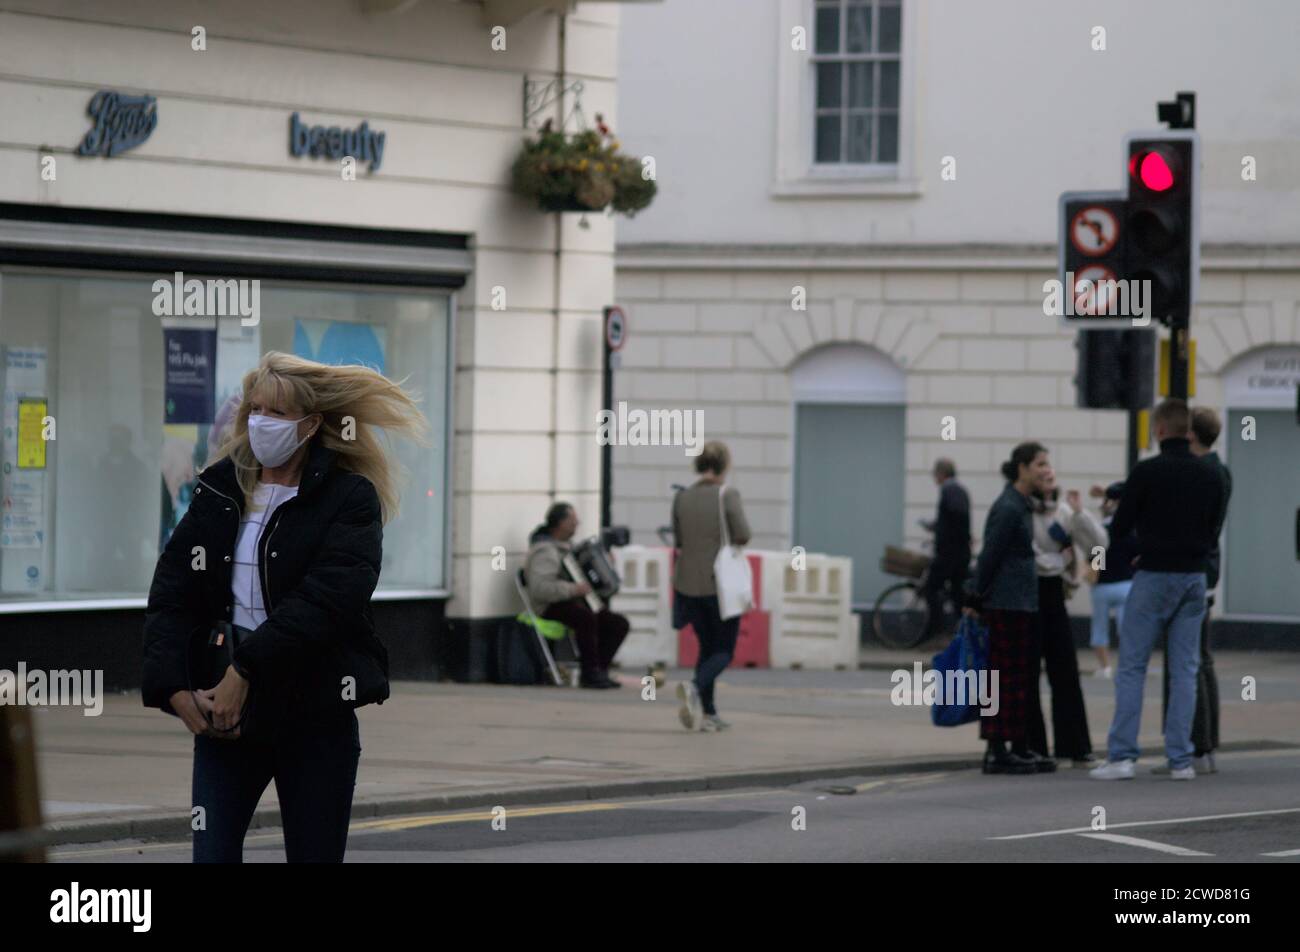 Una donna cammina lungo la Parade a Leamington indossando una maschera facciale, i suoi capelli soffiano nel vento. Sullo sfondo, un busker sta suonando una fisarmonica Foto Stock